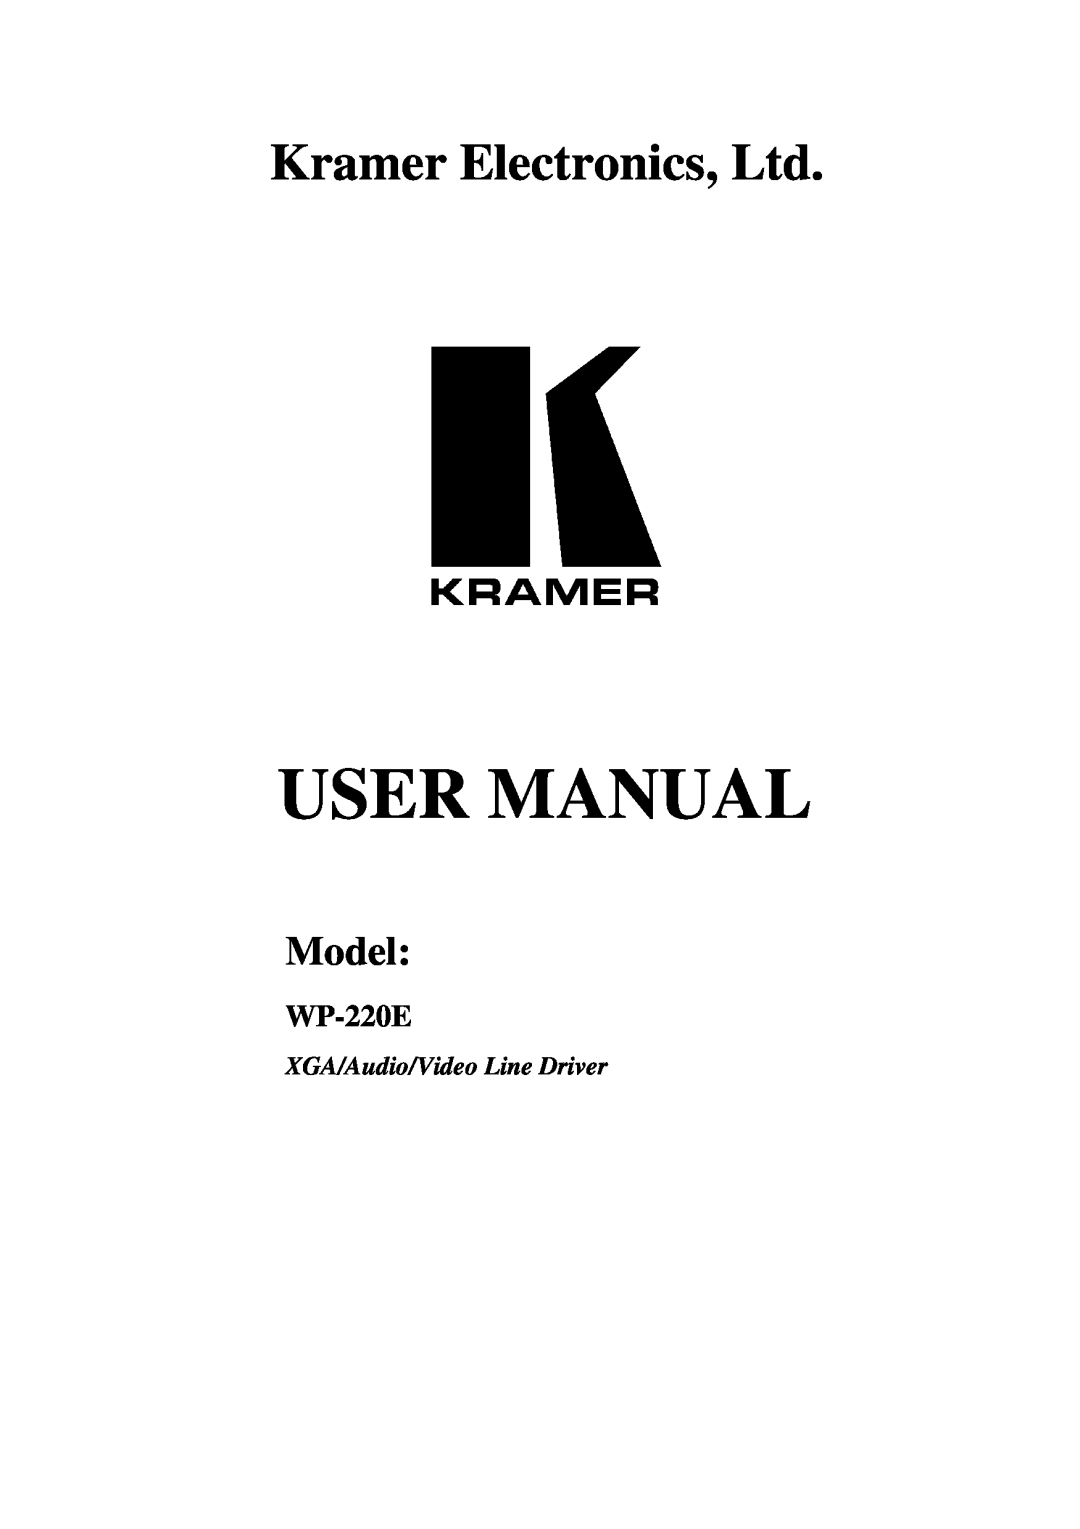 Kramer Electronics WP-220E user manual Kramer Electronics, Ltd, Model, XGA/Audio/Video Line Driver 